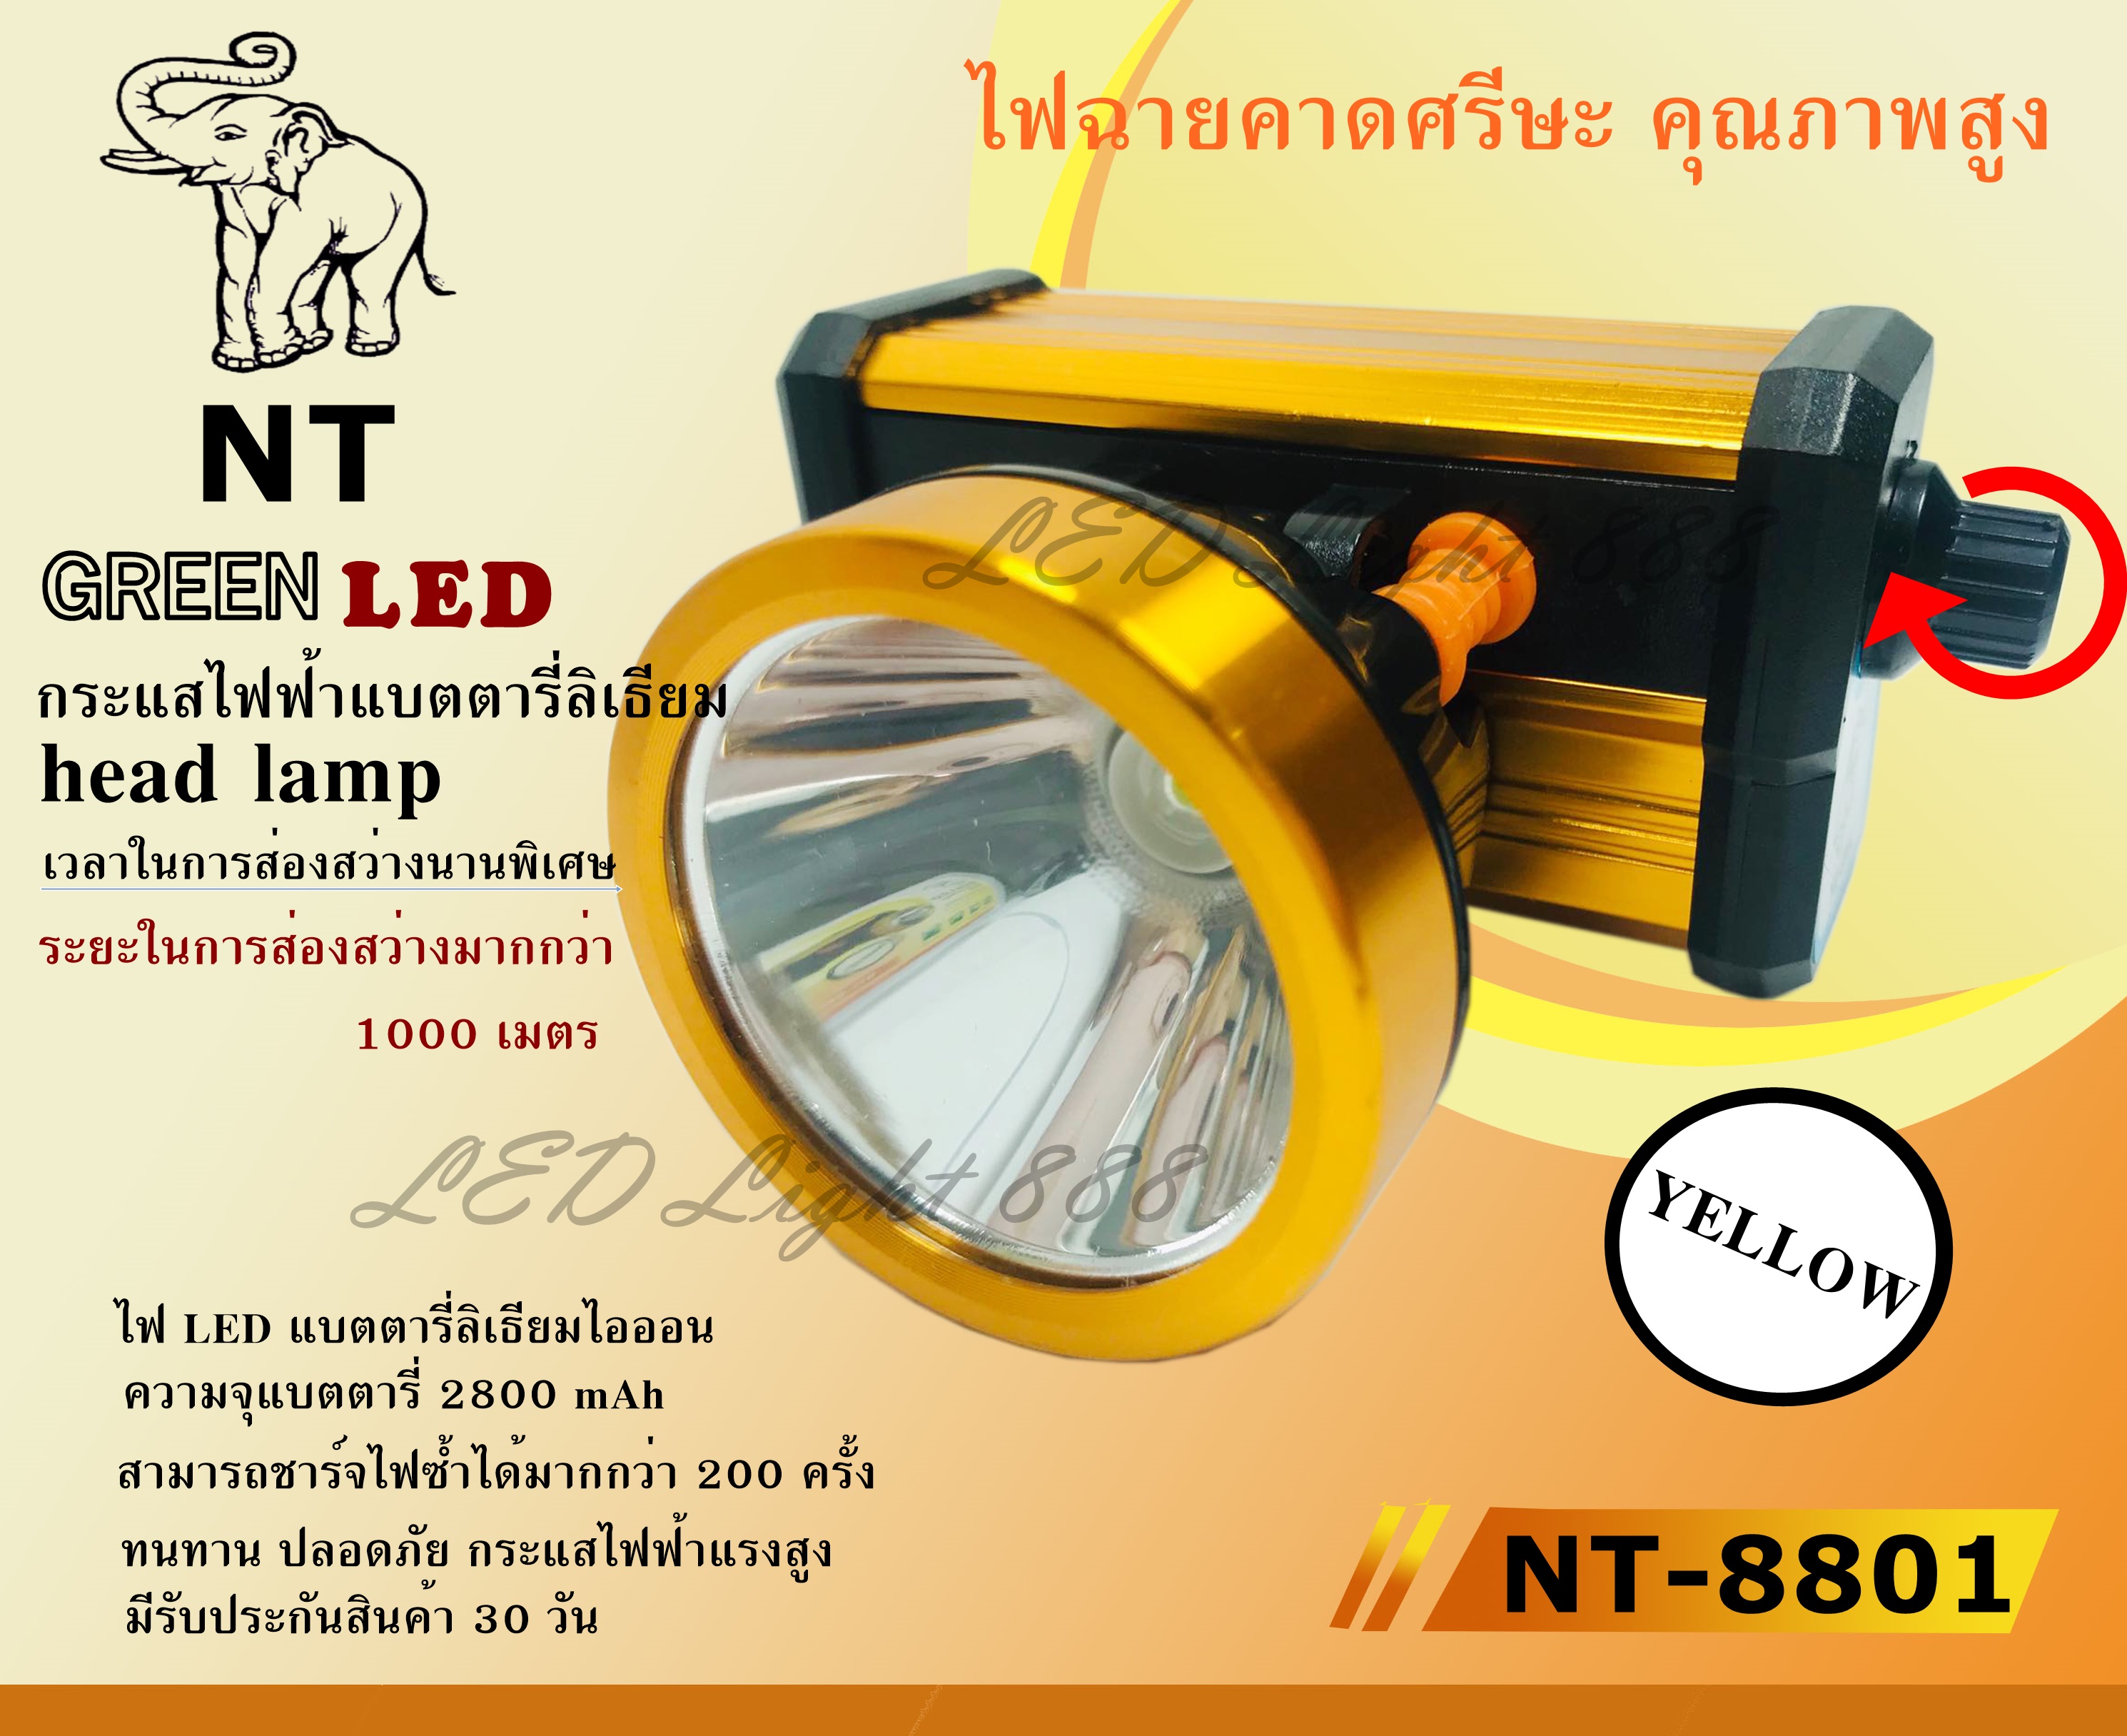 Best Flashlight พร้อมส่ง!!! ค่าส่งถูก (( แสงเหลือง )) NT-8801 ไฟฉายคาดหัว ไฟฉายคาดศรีษะ ไฟฉายแรงสูง ไฟฉาย ตราเสือ ตราช้าง รุ่น  NT8801 8801 ลุยฝนได้ ส่องไกลมากกว่า 1000 เมตร แบตเตอรี่ลิเธียม head lamp 2800 mAh หลอดชิบ LED 800 W